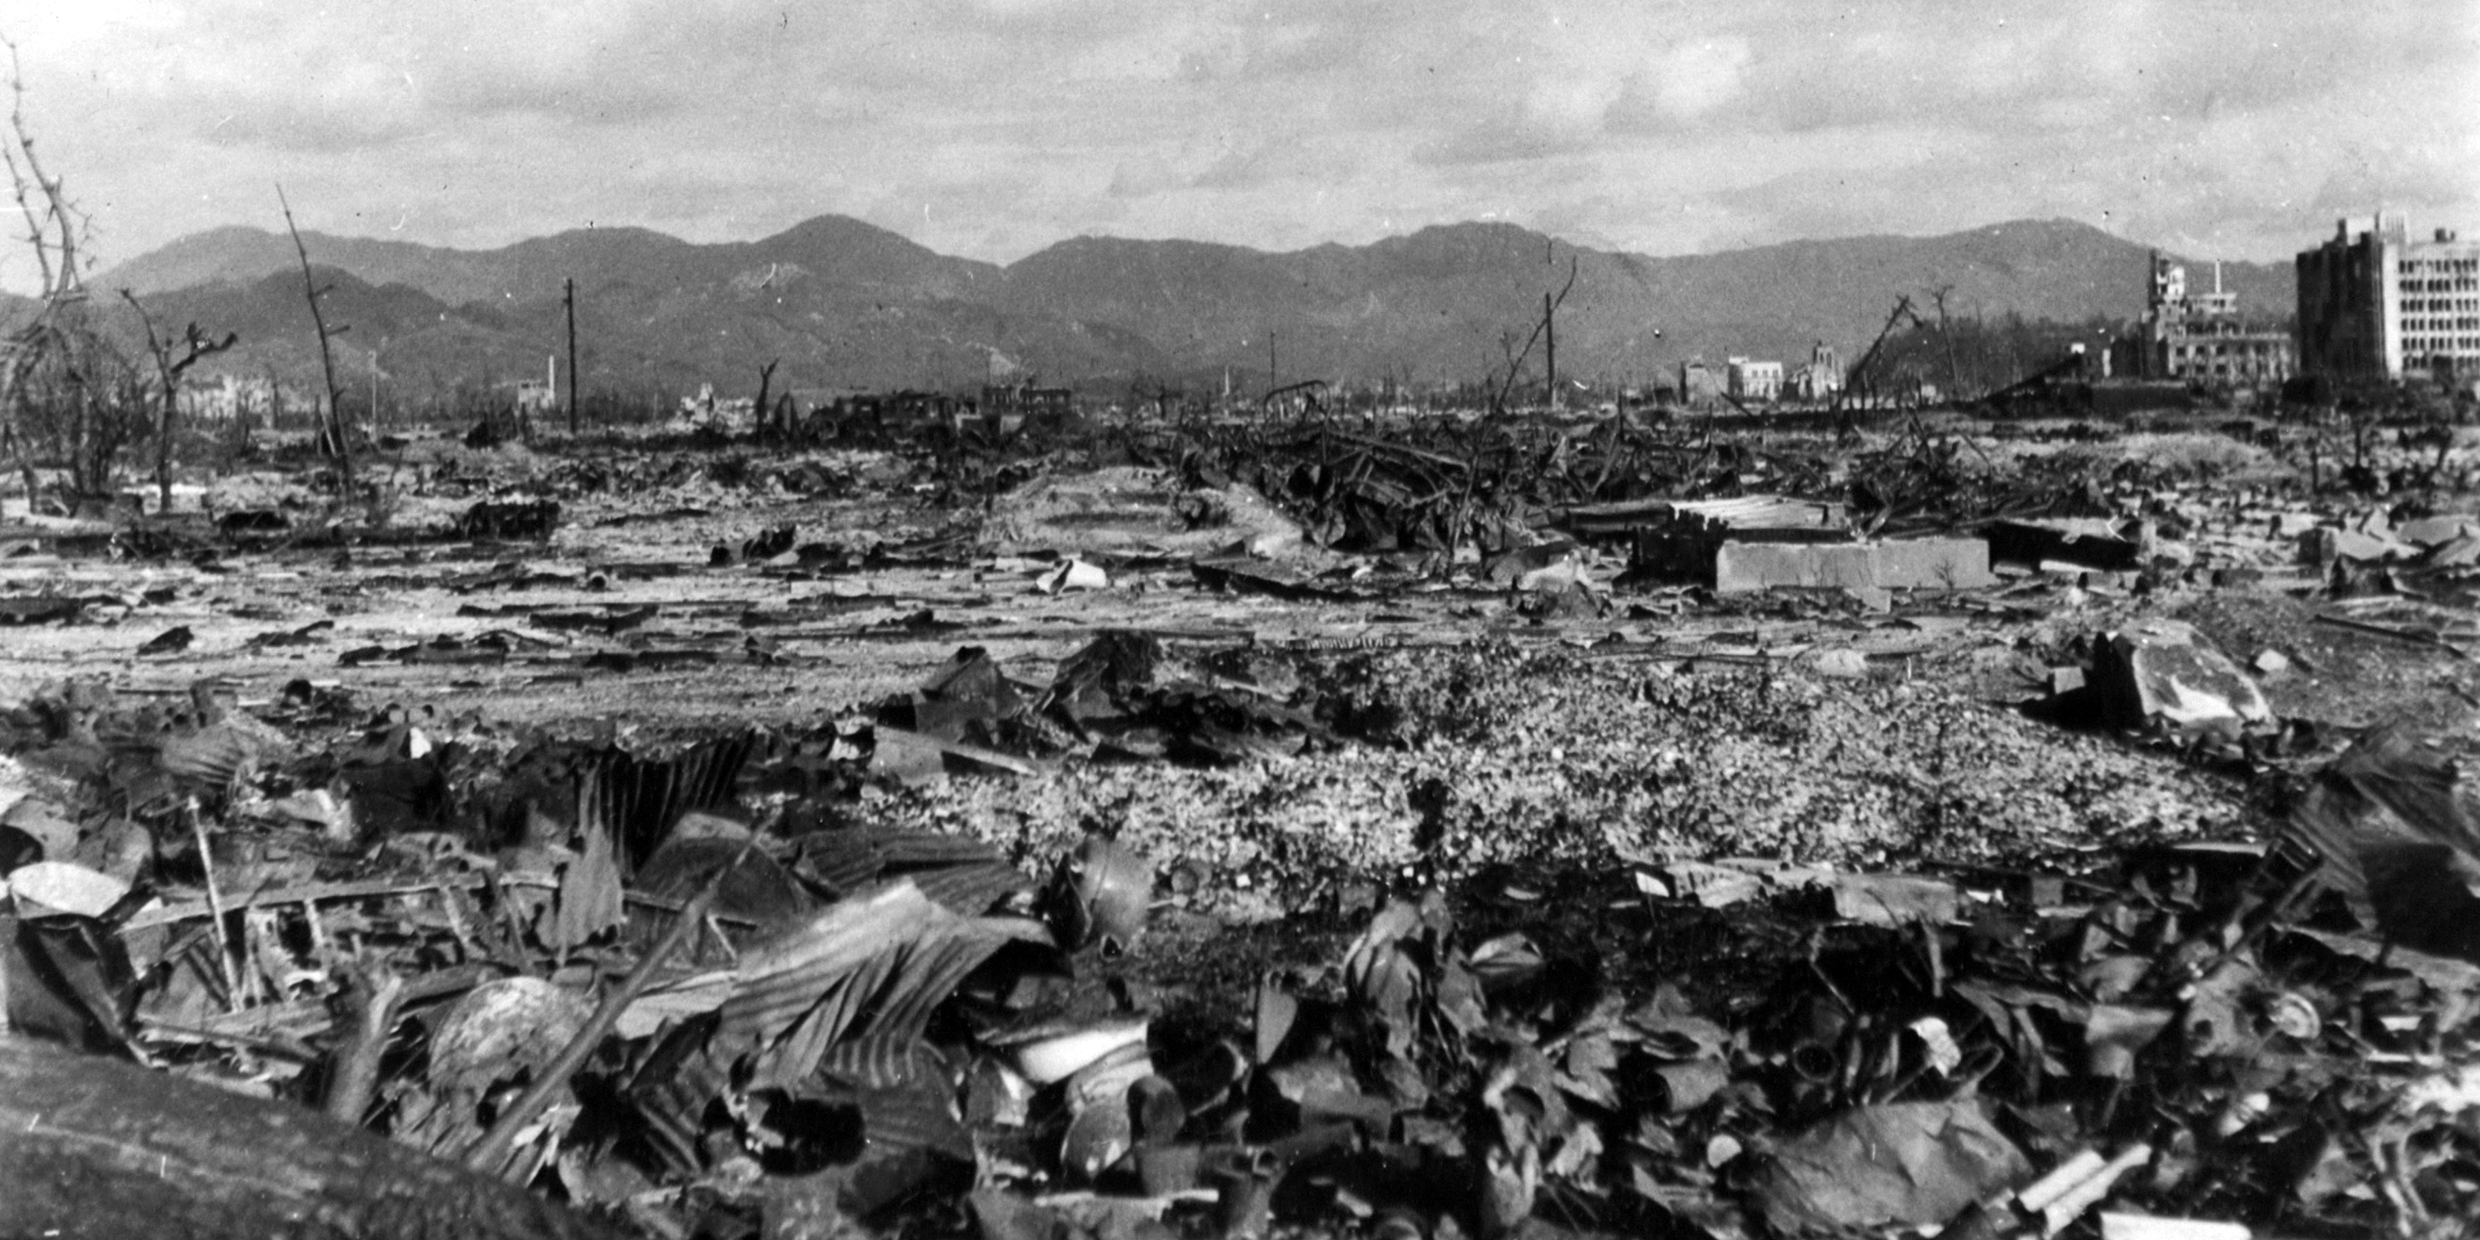 Image of Hiroshima destroyed by atomic bombinb